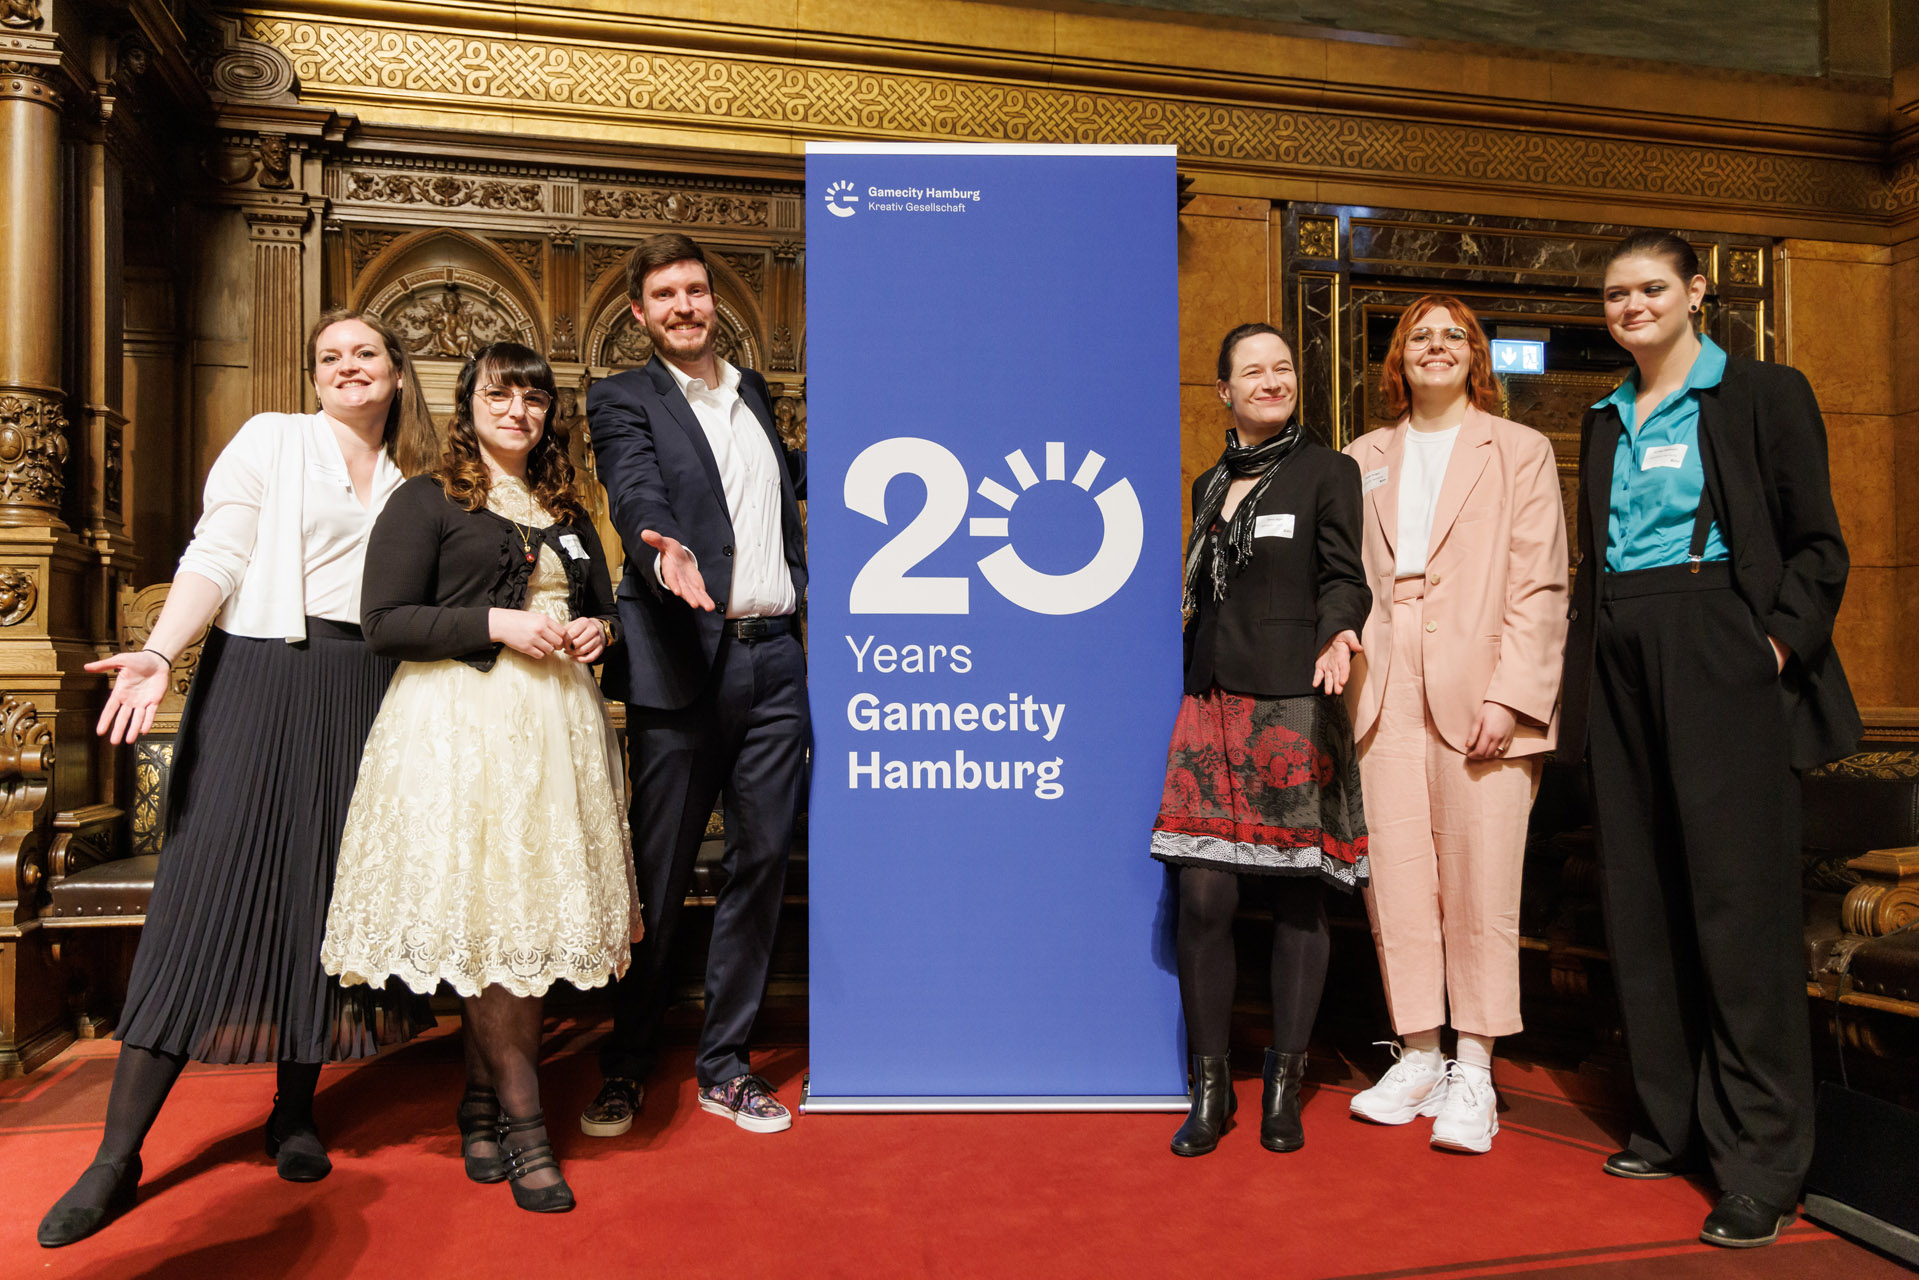 The current Gamecity Hamburg team (left to right): Margarete Schneider, Amanda Förtsch, Dennis Schoubye, Anna Jäger, Helen Krüger, Annika Heilmann / Photo by Marcelo Hernandez